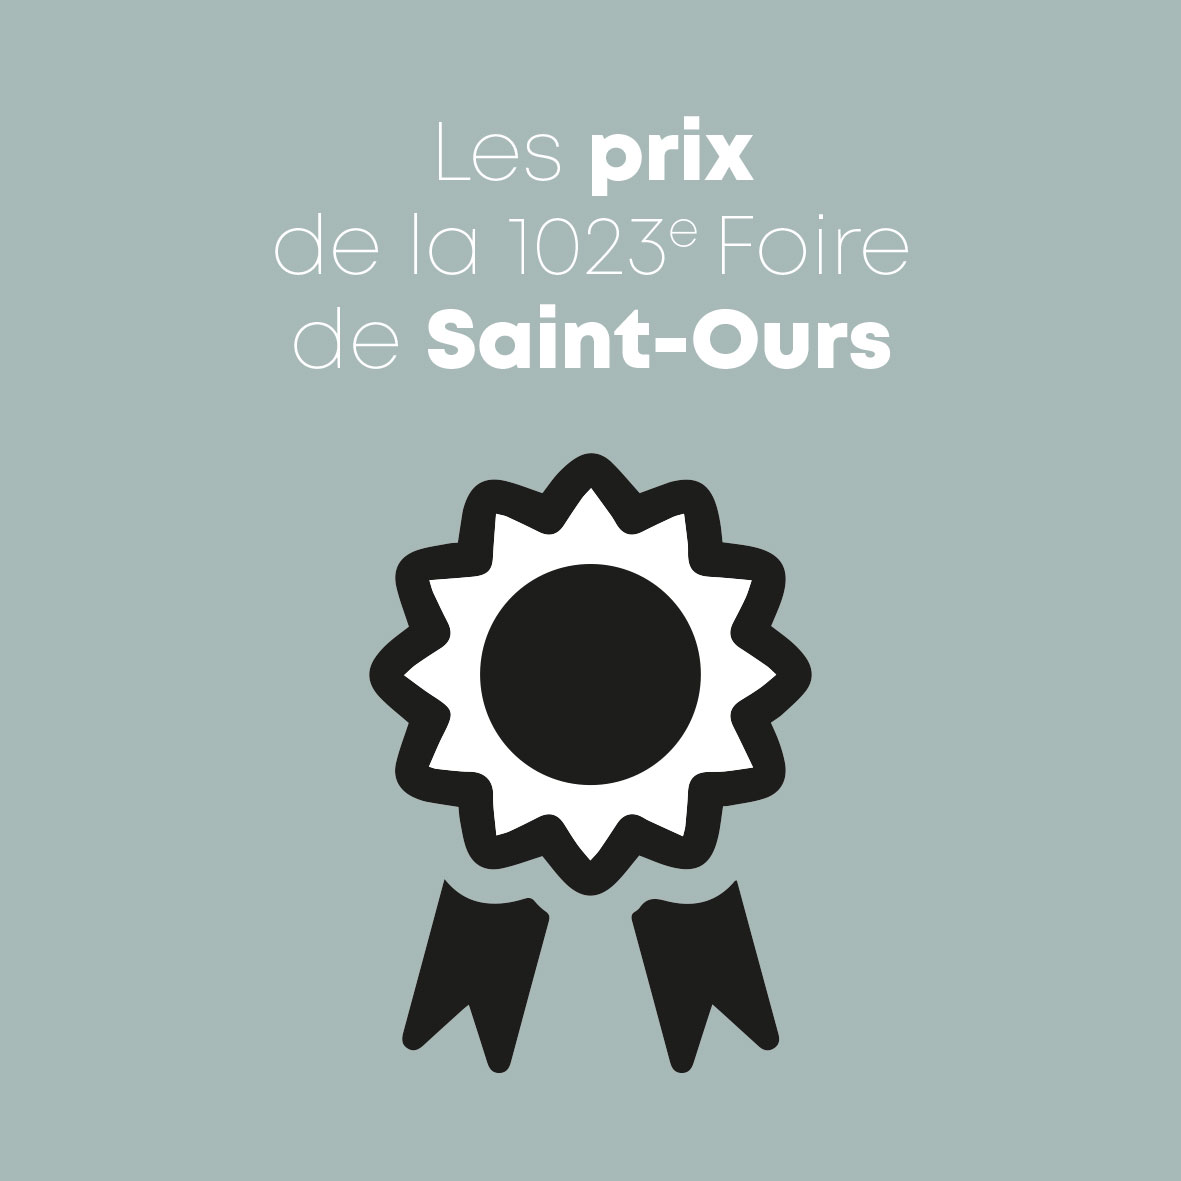 Prix de la 1023e Foire de Saint-Ours